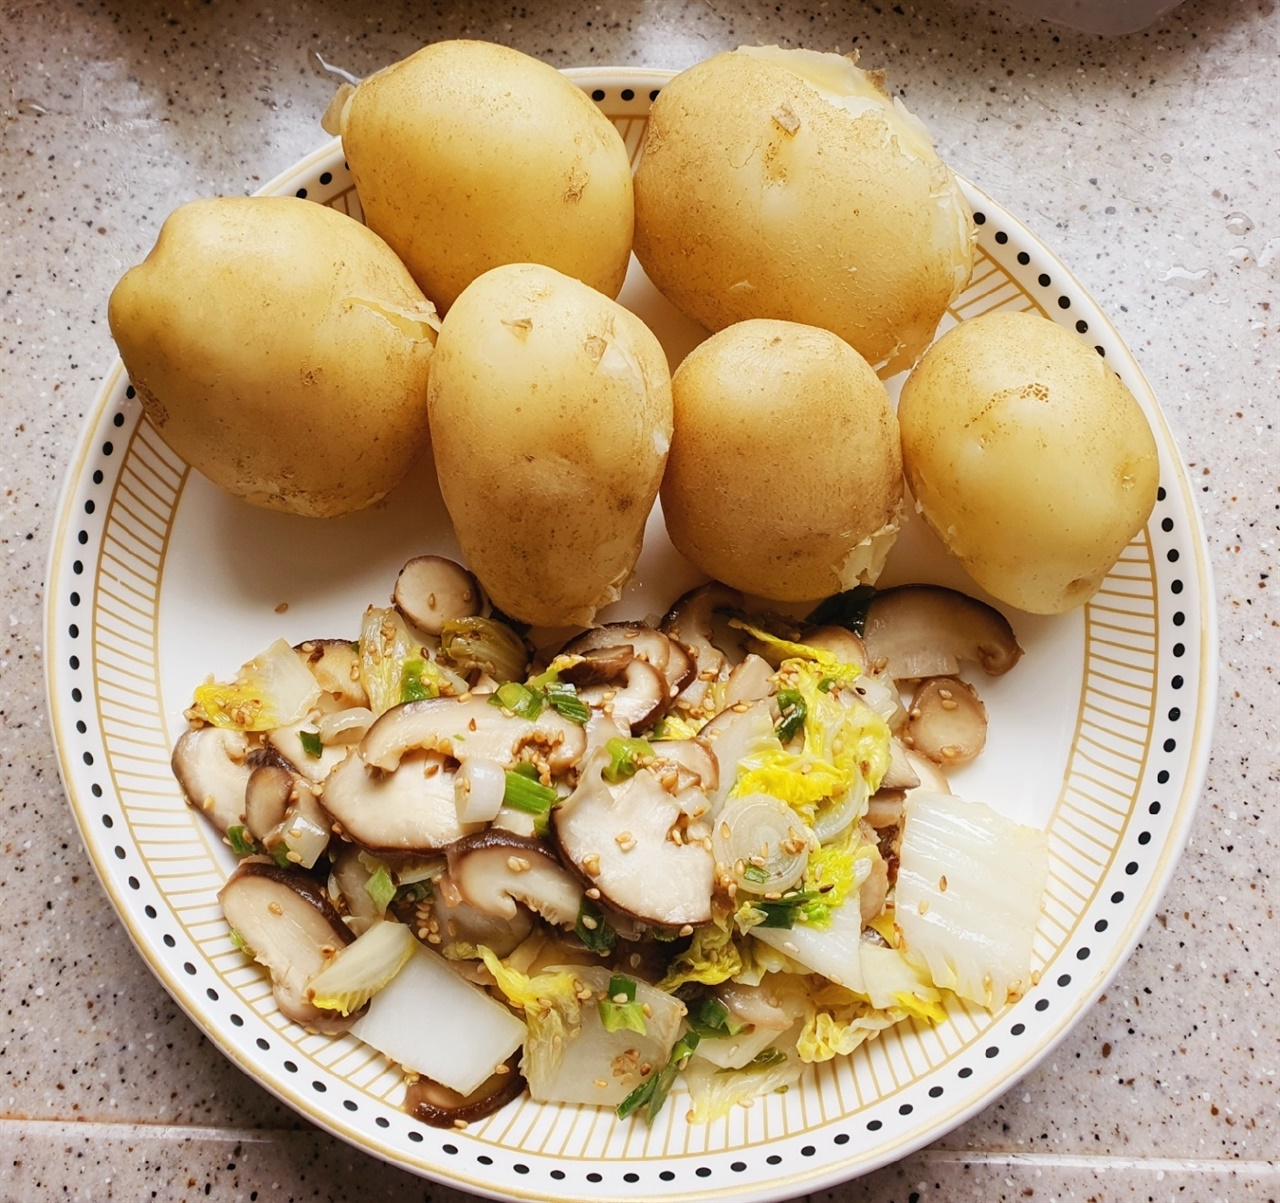 수확한 감자을 삶고, 버섯과 배추로 볶음한 아침밥상